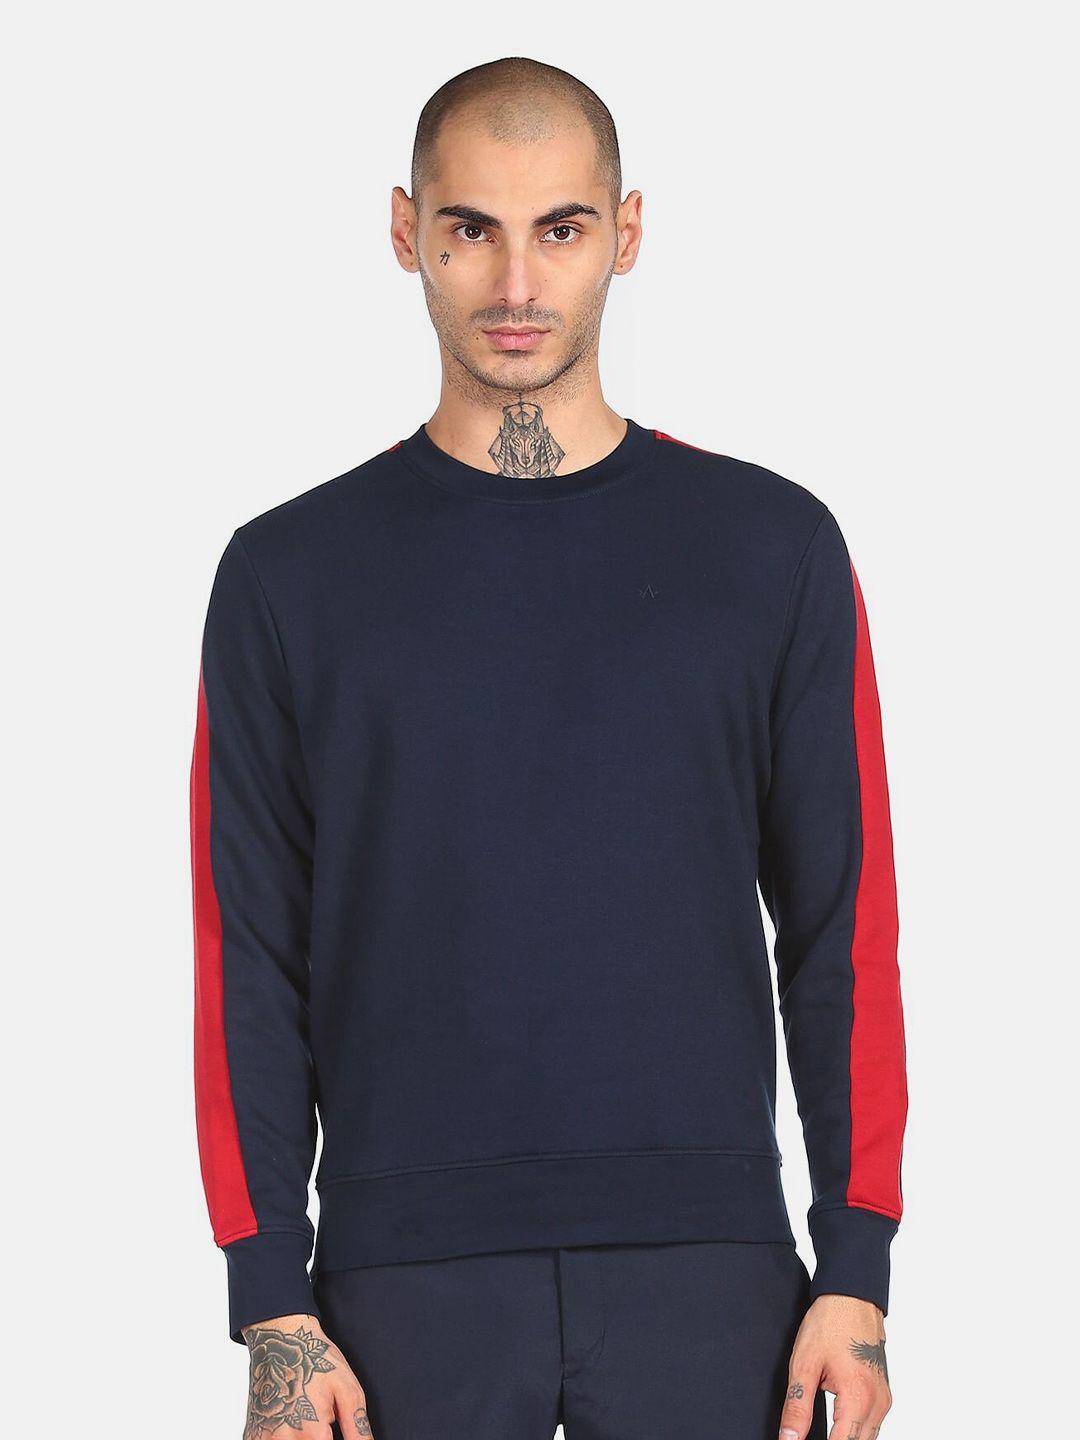 arrow-sport-men-navy-blue-solid-sweatshirt